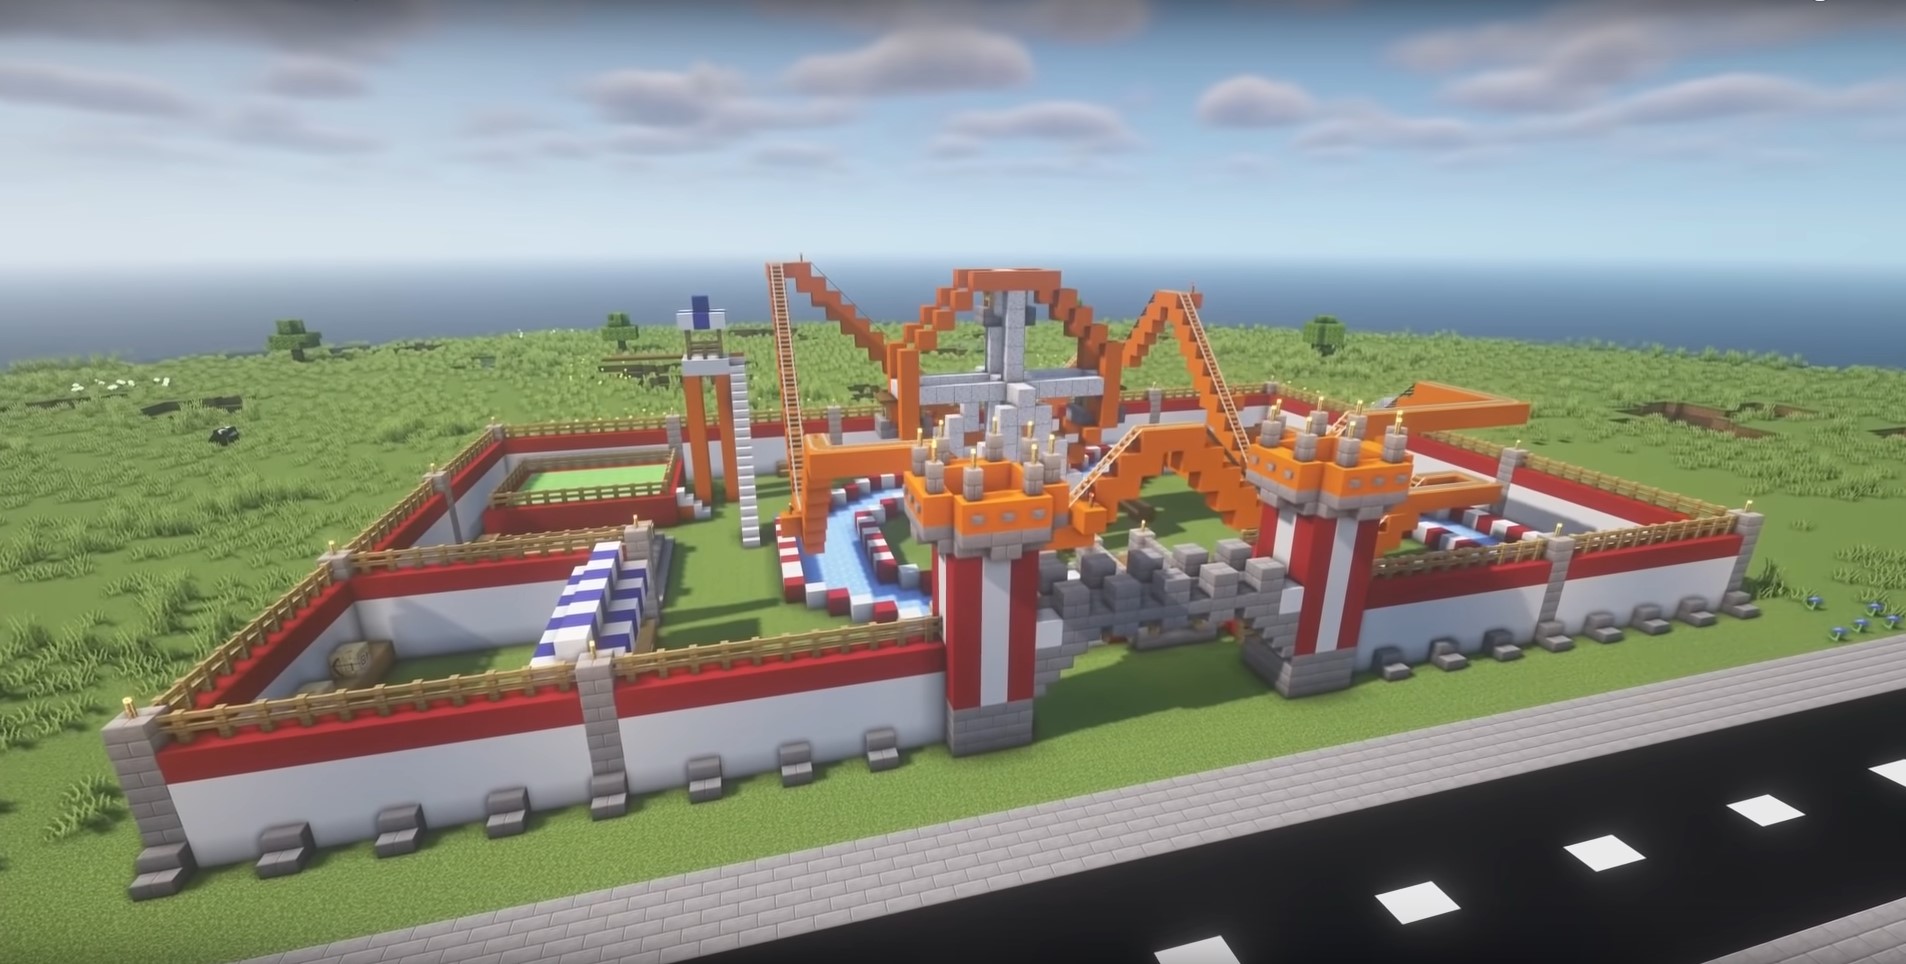 Amusement park minecraft building idea